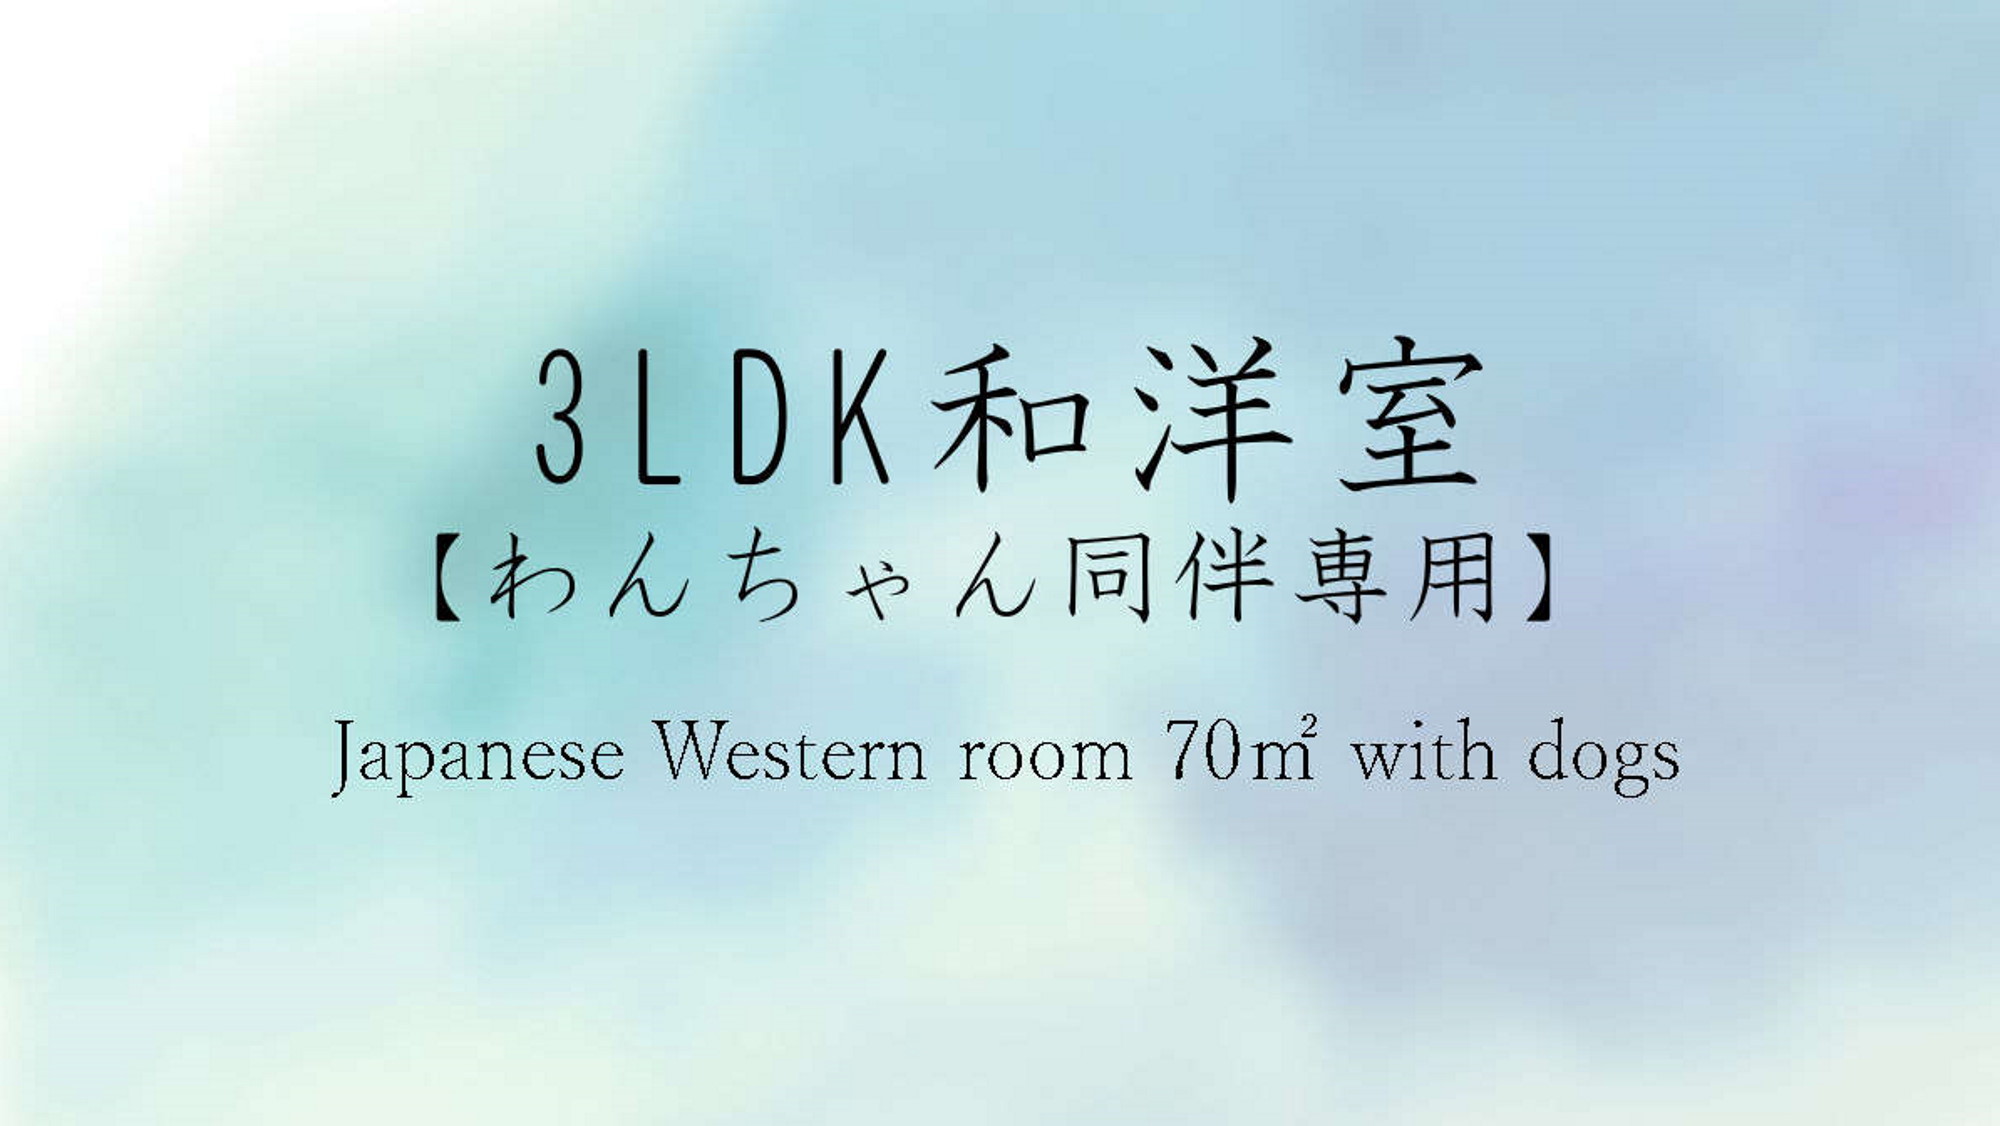 「3LDK 和洋室【わんちゃんといっしょ】」目の前は豊かなお庭で、めいいっぱい遊ぶ♪